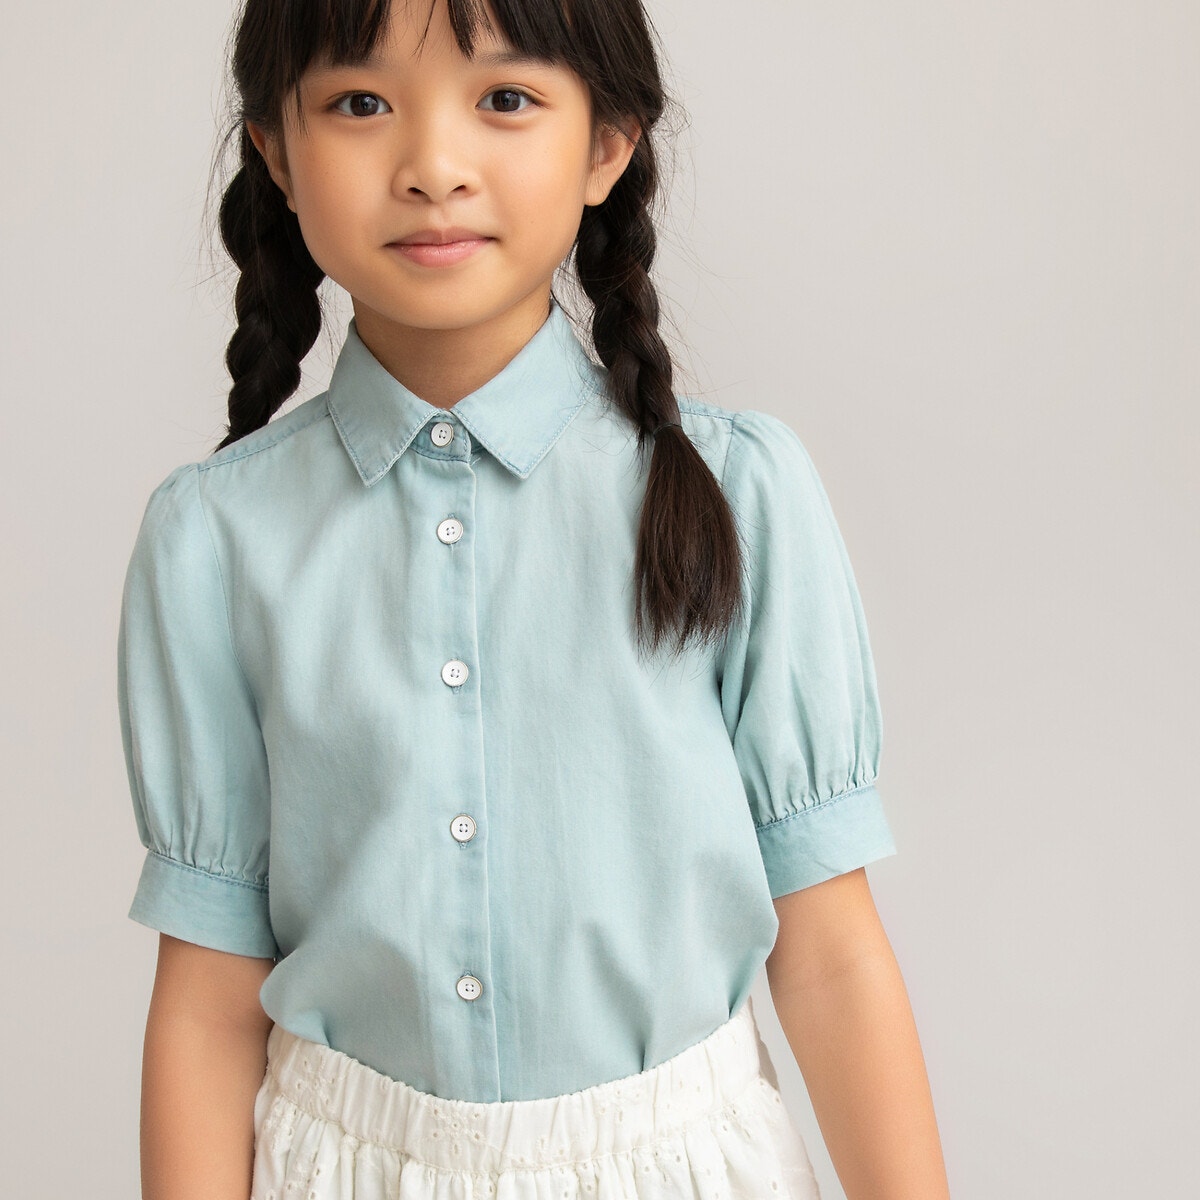 ΠΑΙΔΙ | Μπλούζες & Πουκάμισα | Τοπ Κοντομάνικη μπλούζα από ελαφρύ ντένιμ, 3-12 ετών